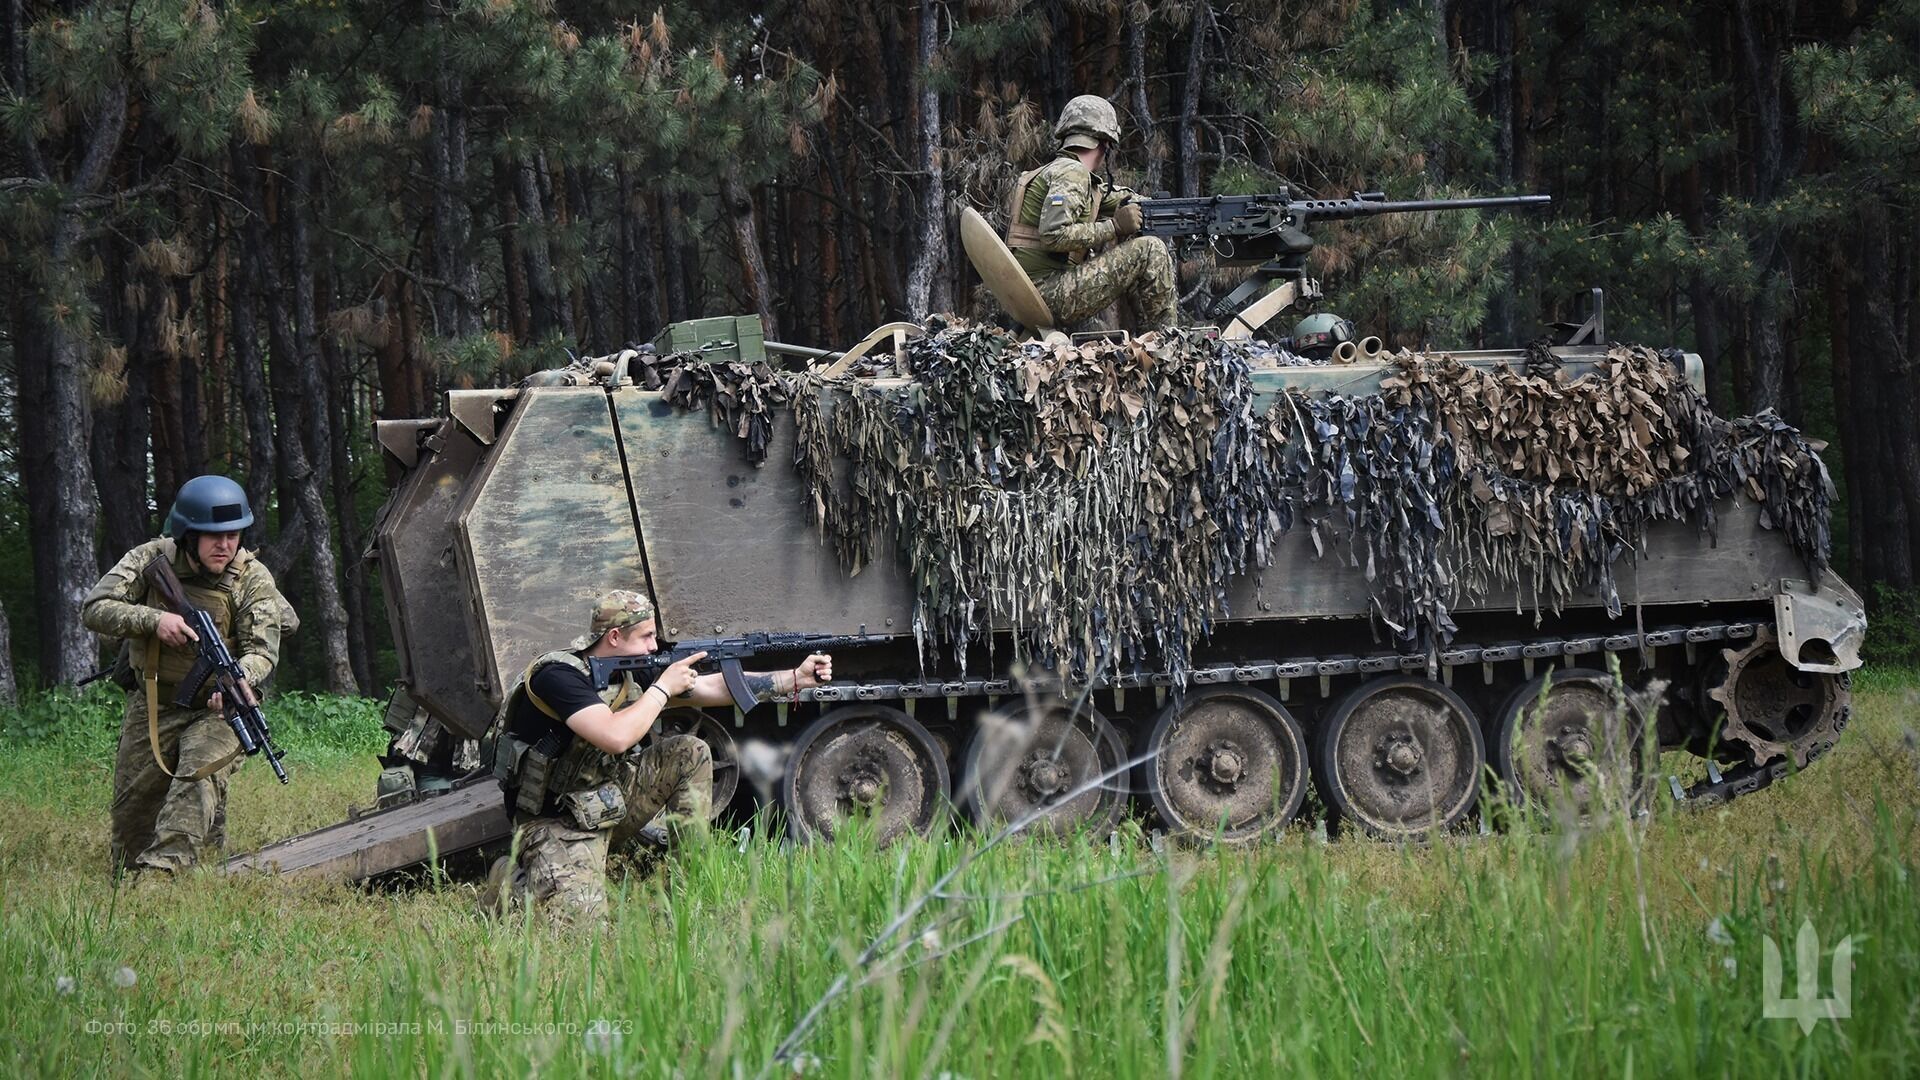 "Йдемо вперед": морпіхи 36-ї бригади ЗСУ показали підготовку до контрнаступу на американських БТР M113. Фото